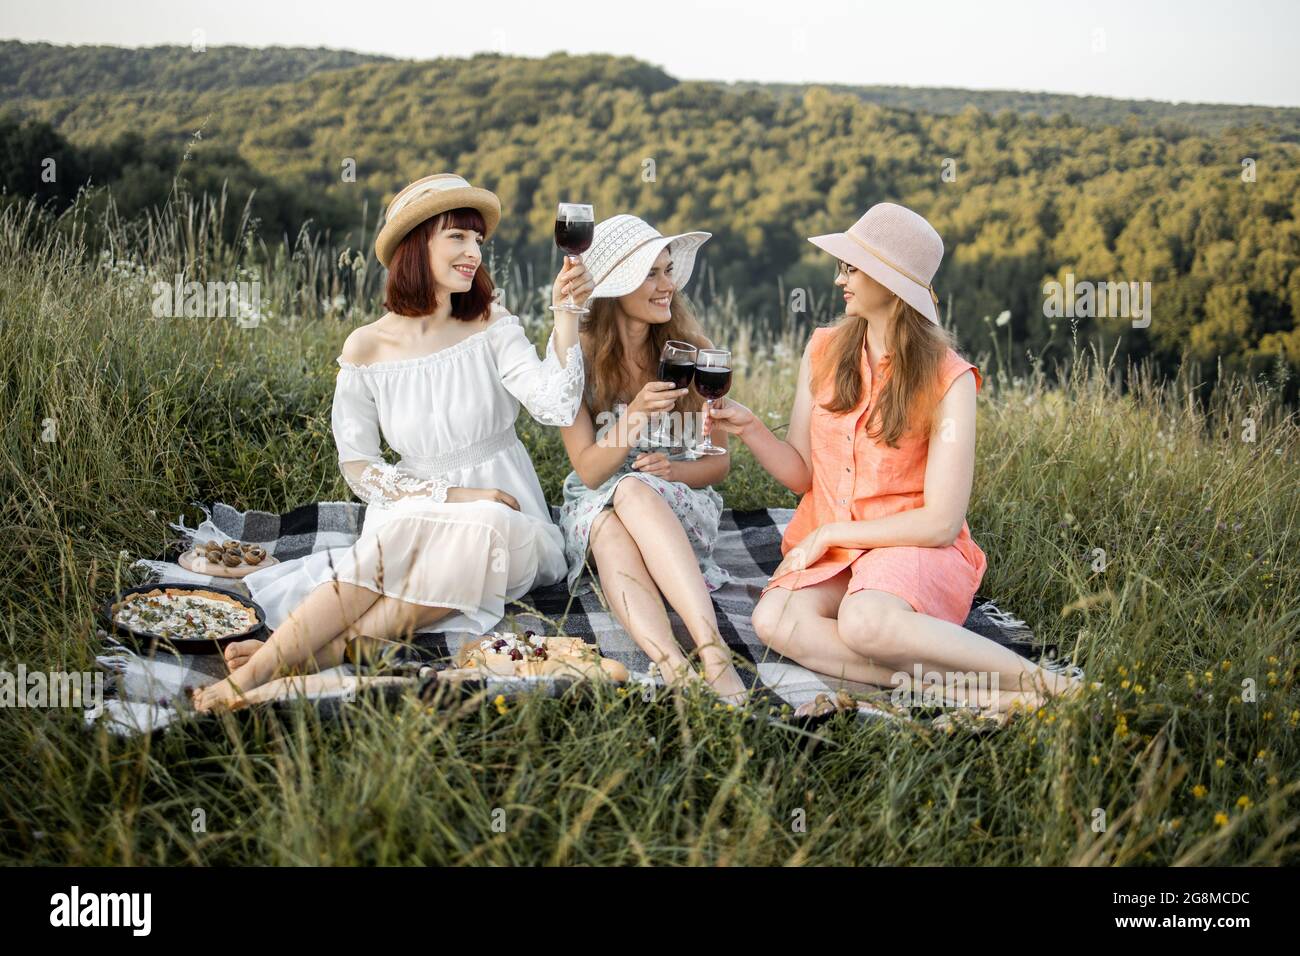 Groupe de trois jeunes femmes stupéfiantes lors d'un pique-nique sur le  terrain. Les meilleurs amis souriants boivent du vin rouge sur la pelouse.  Les filles en robes et chapeaux élégants se détendent